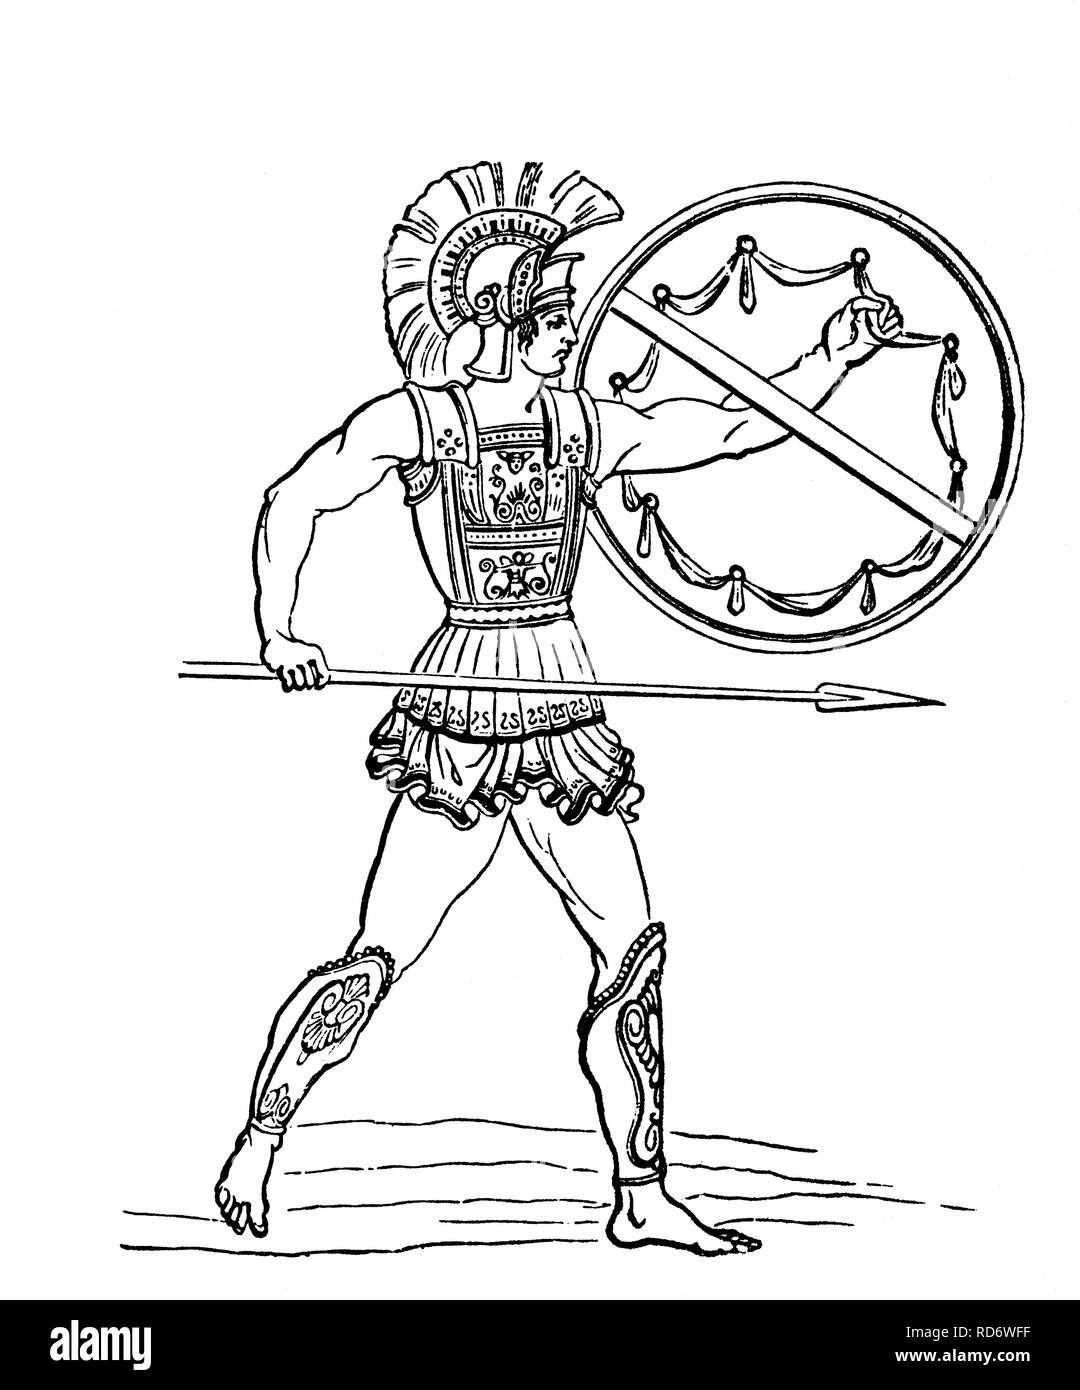 Un Hoplite, un citoyen-soldat de l'une des cités-États grecques antiques de la période archaïque et classique, gravure sur bois de 1880 Banque D'Images